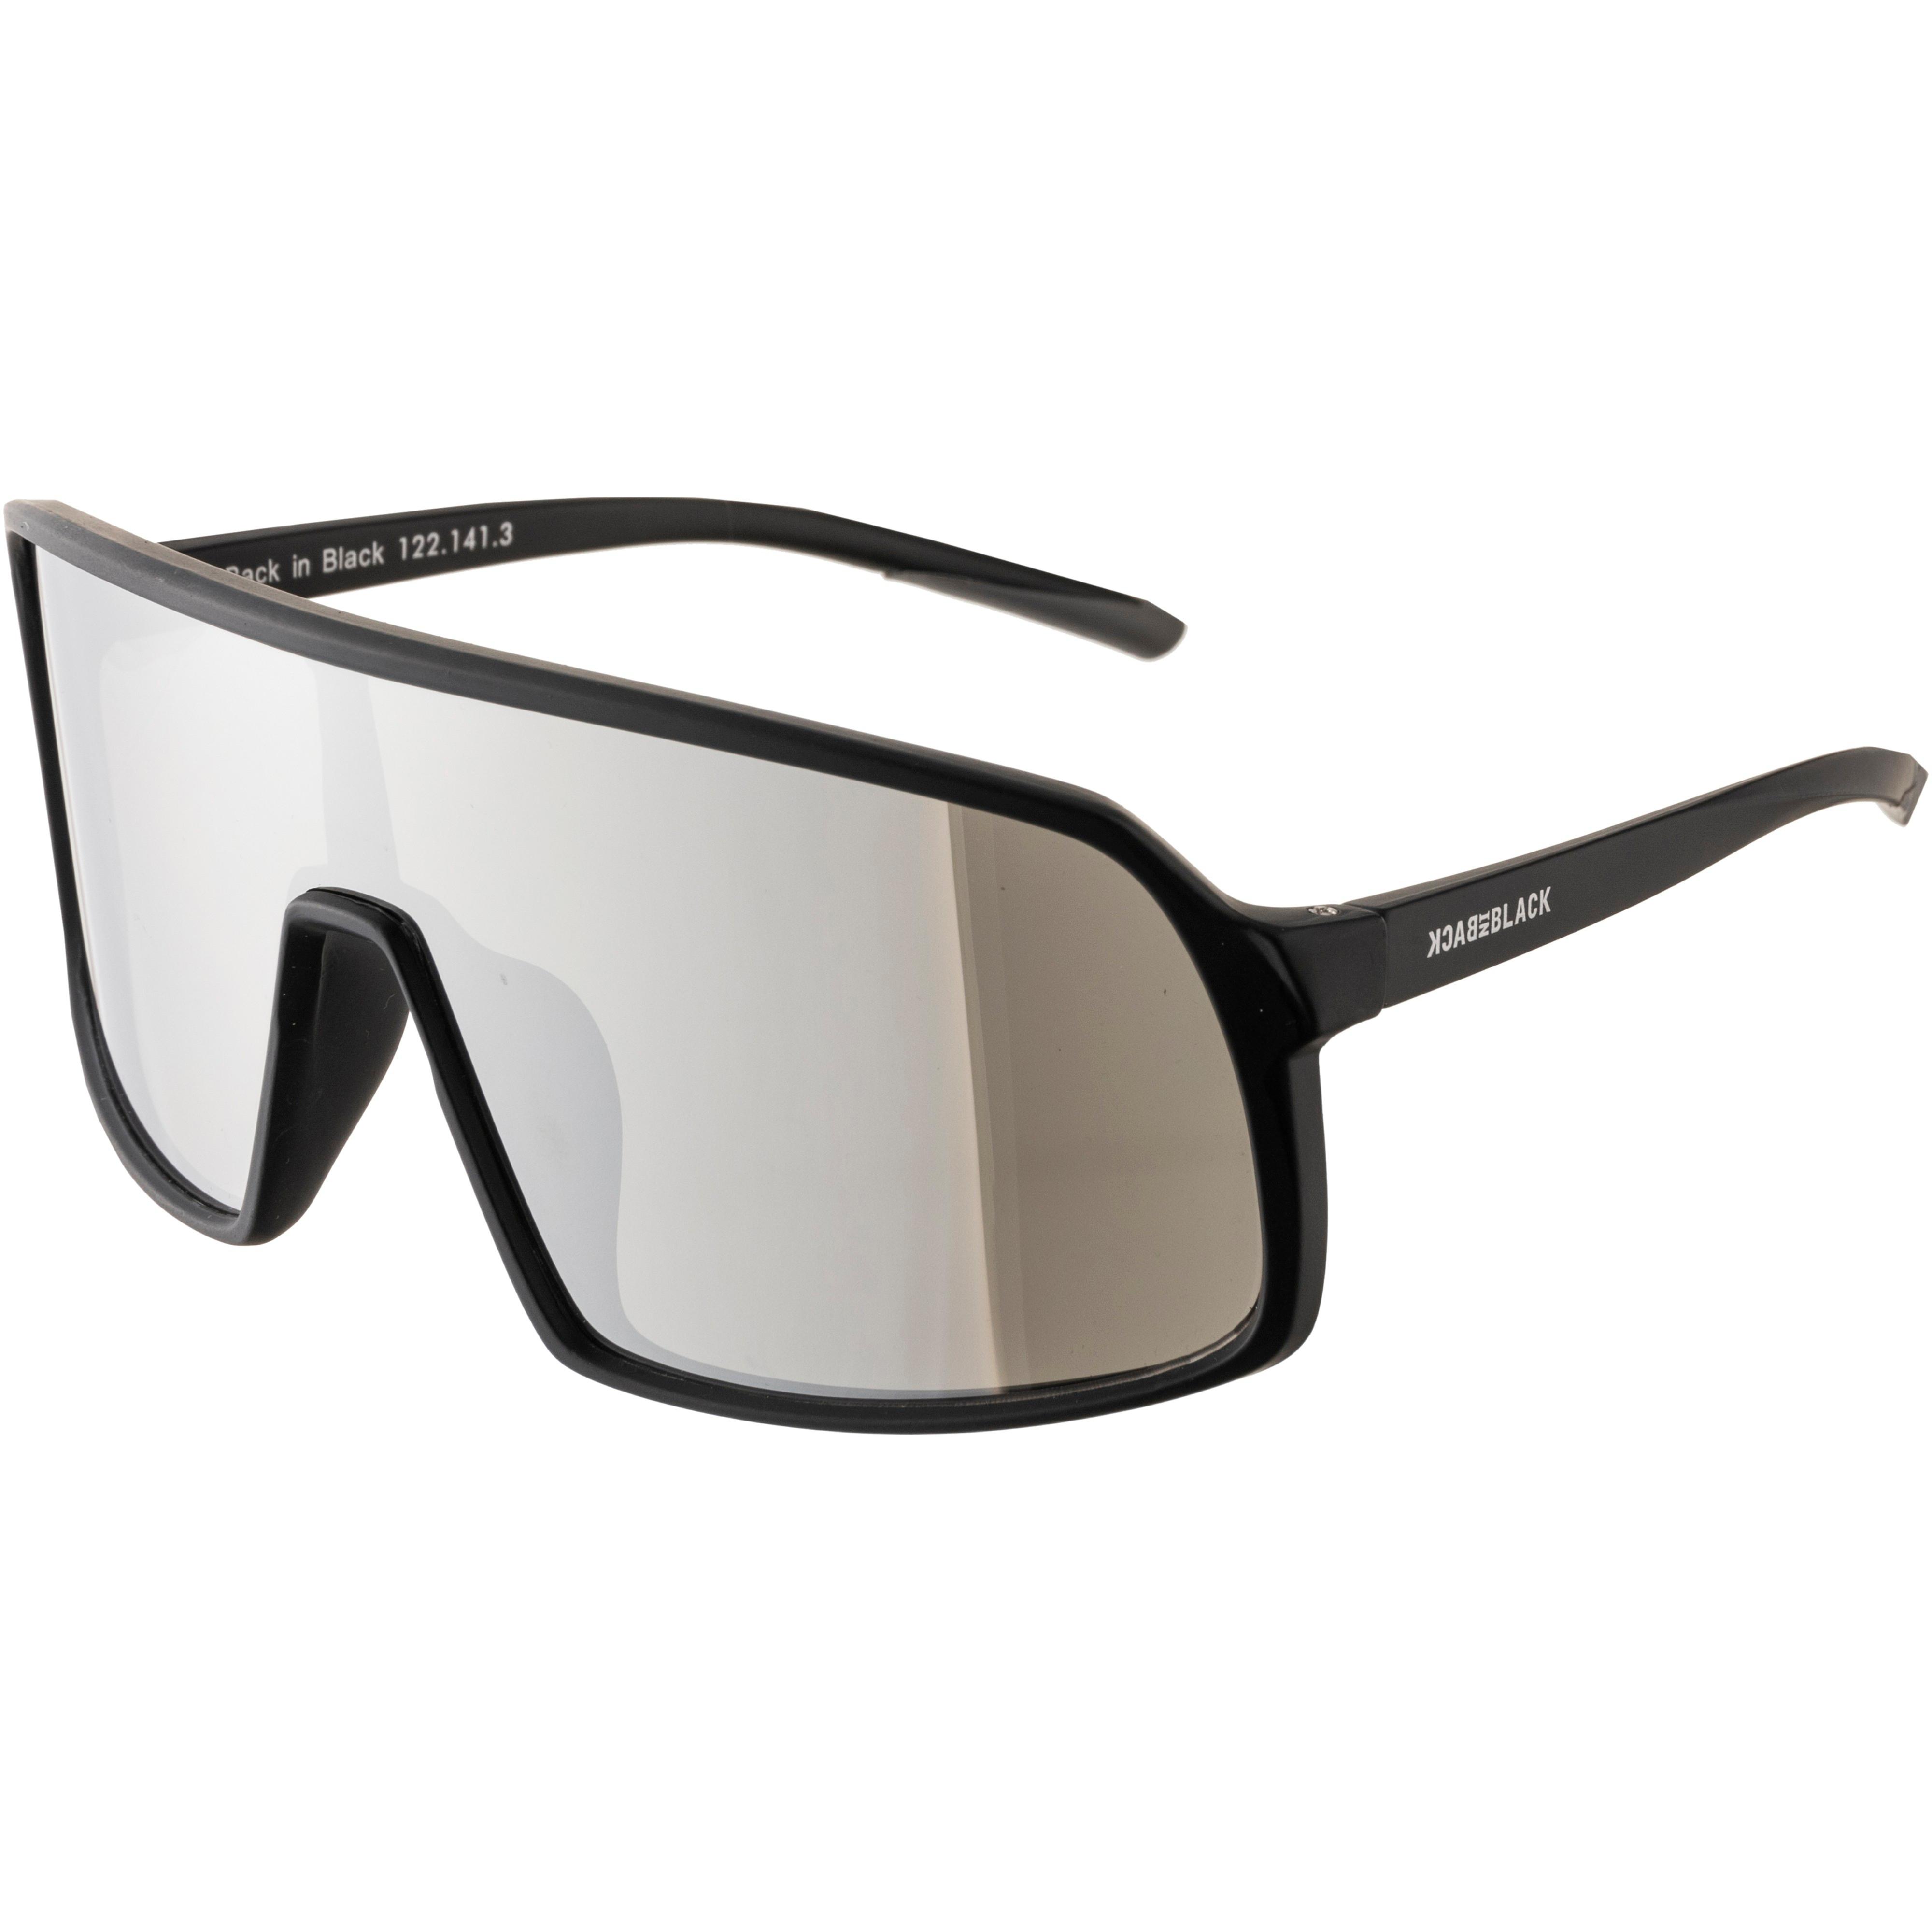 Back in Black mirror kaufen im Shop silver - matt black SportScheck Brille von Online